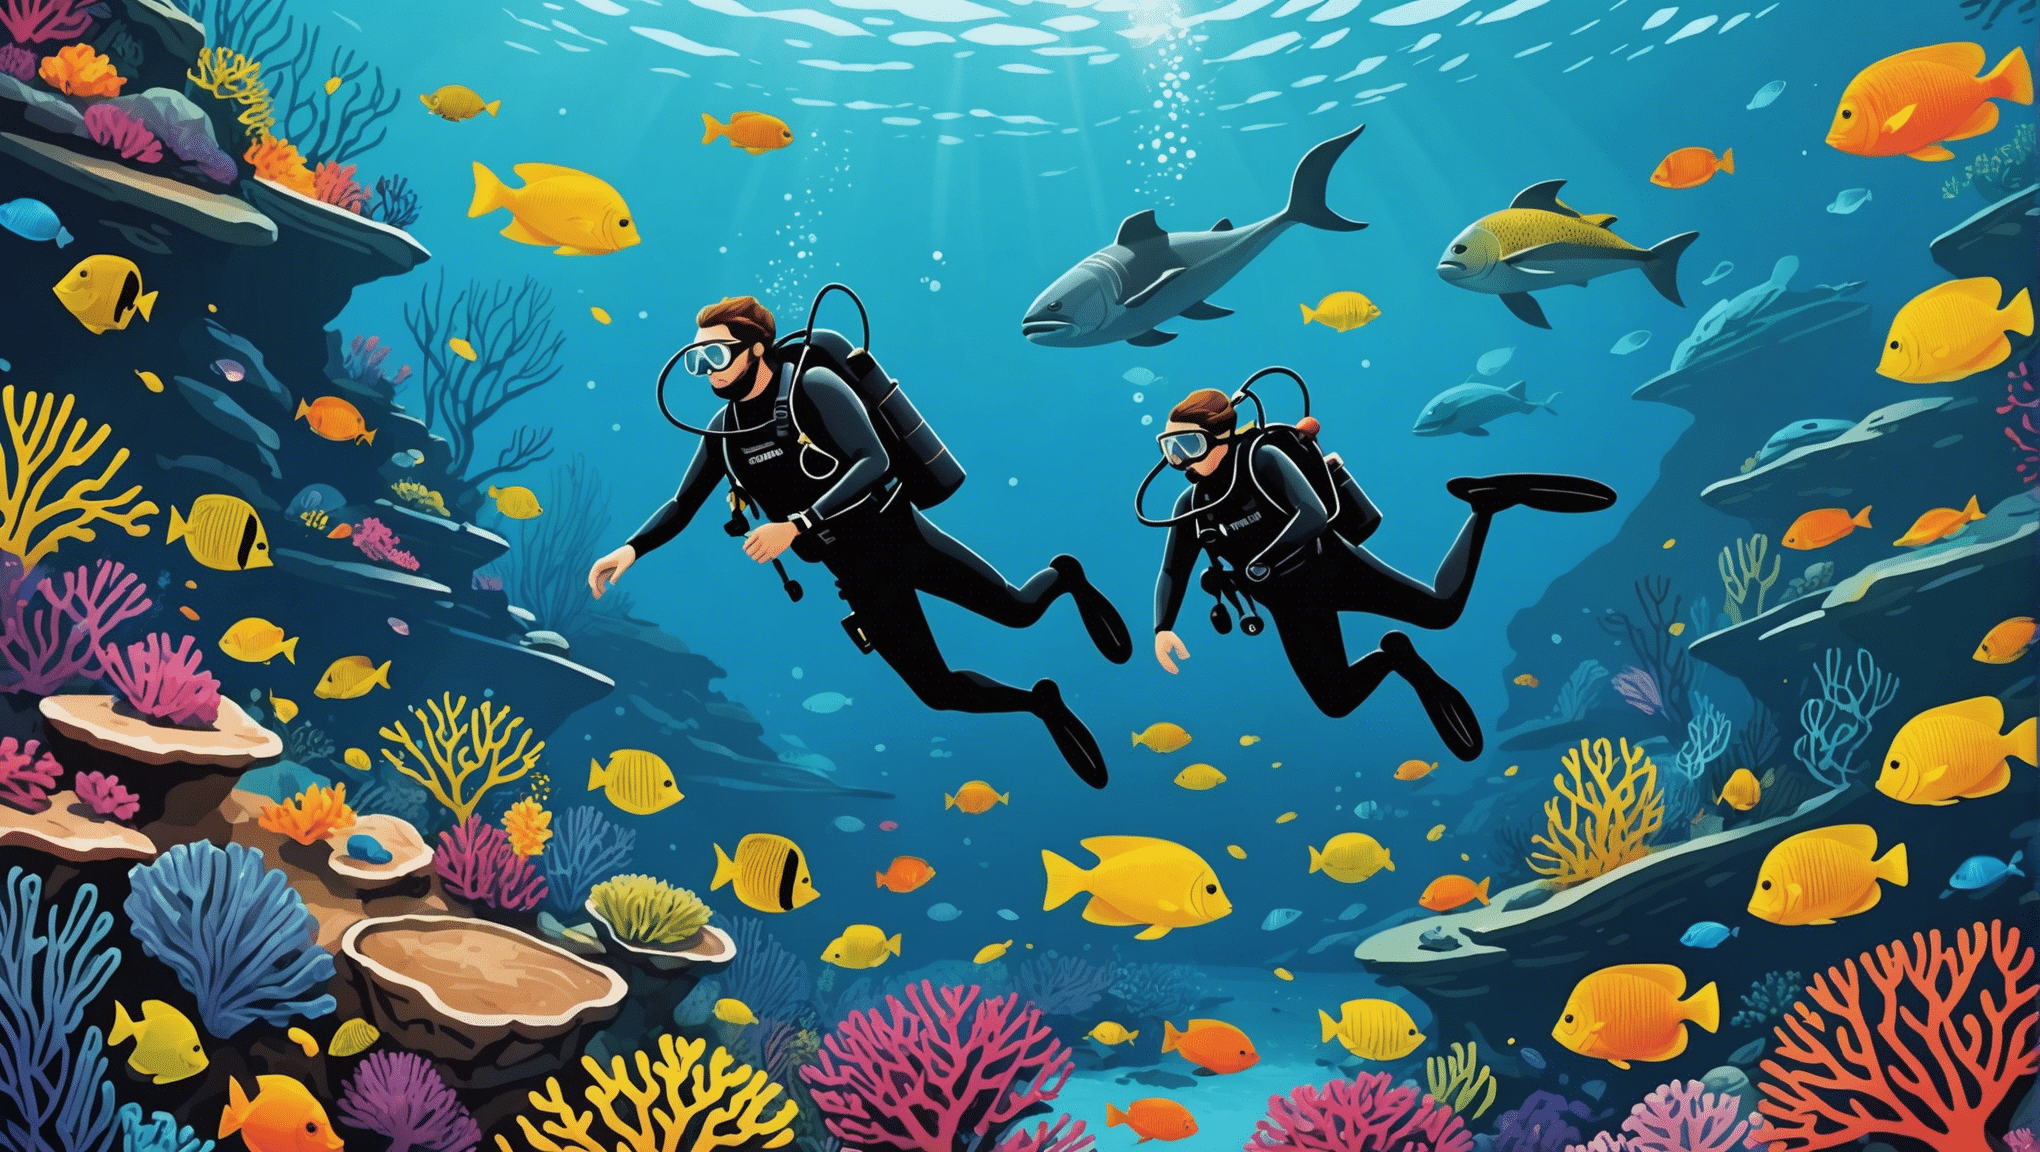 descubre los mejores lugares para bucear del mundo y descubre la belleza submarina con nuestros destinos imperdibles.